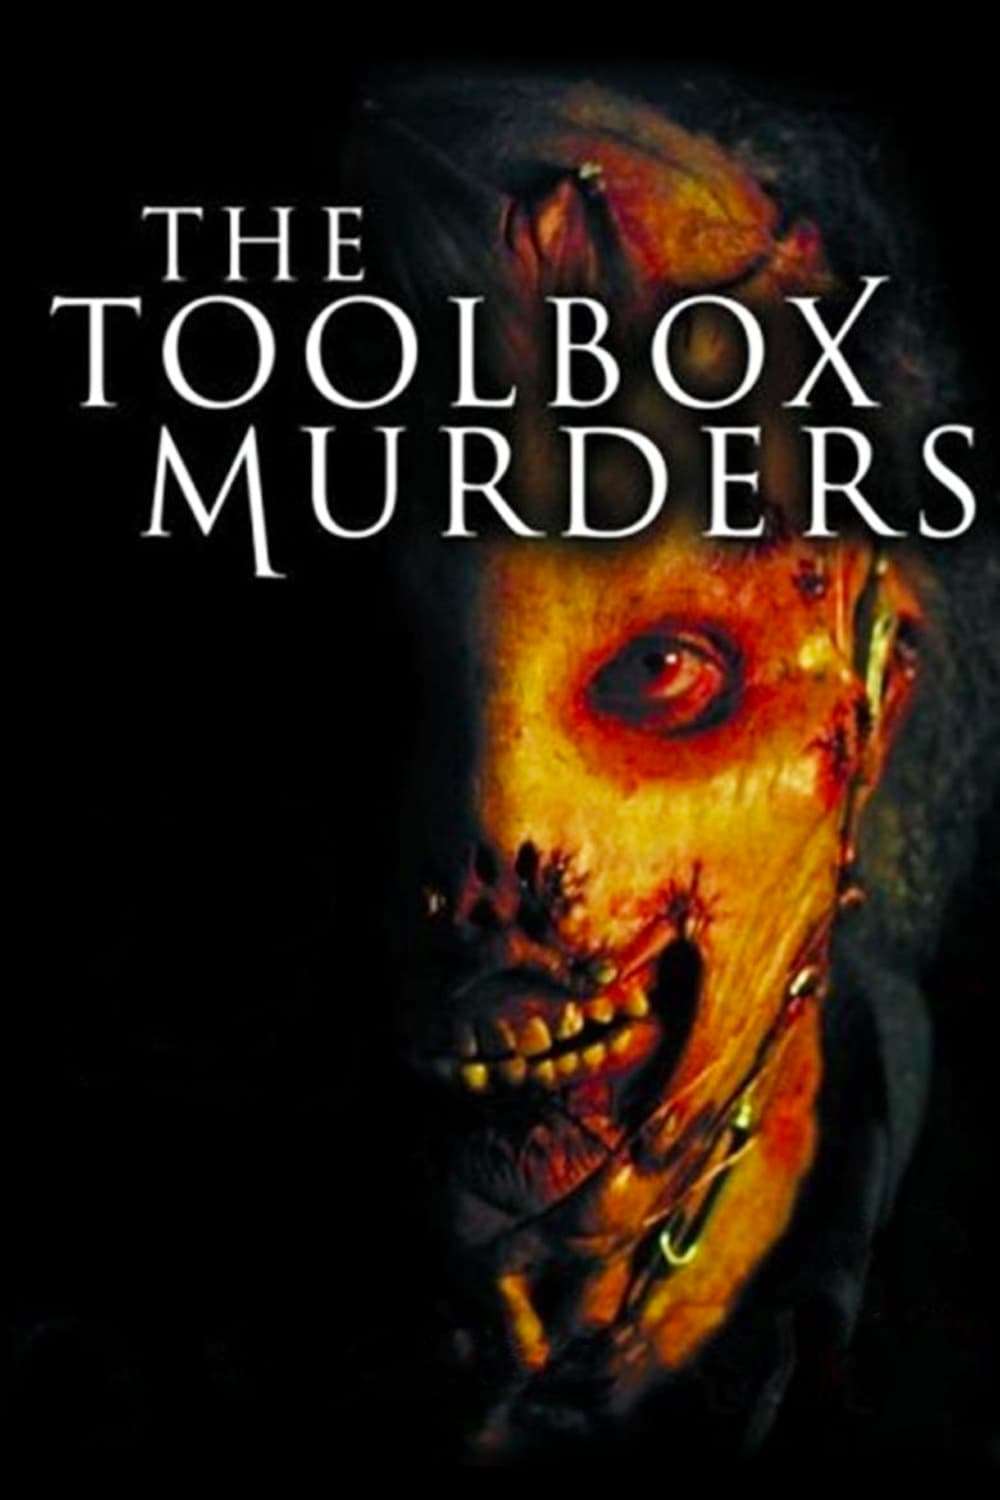 Toolbox Murders (2004) by Tobe Hooper